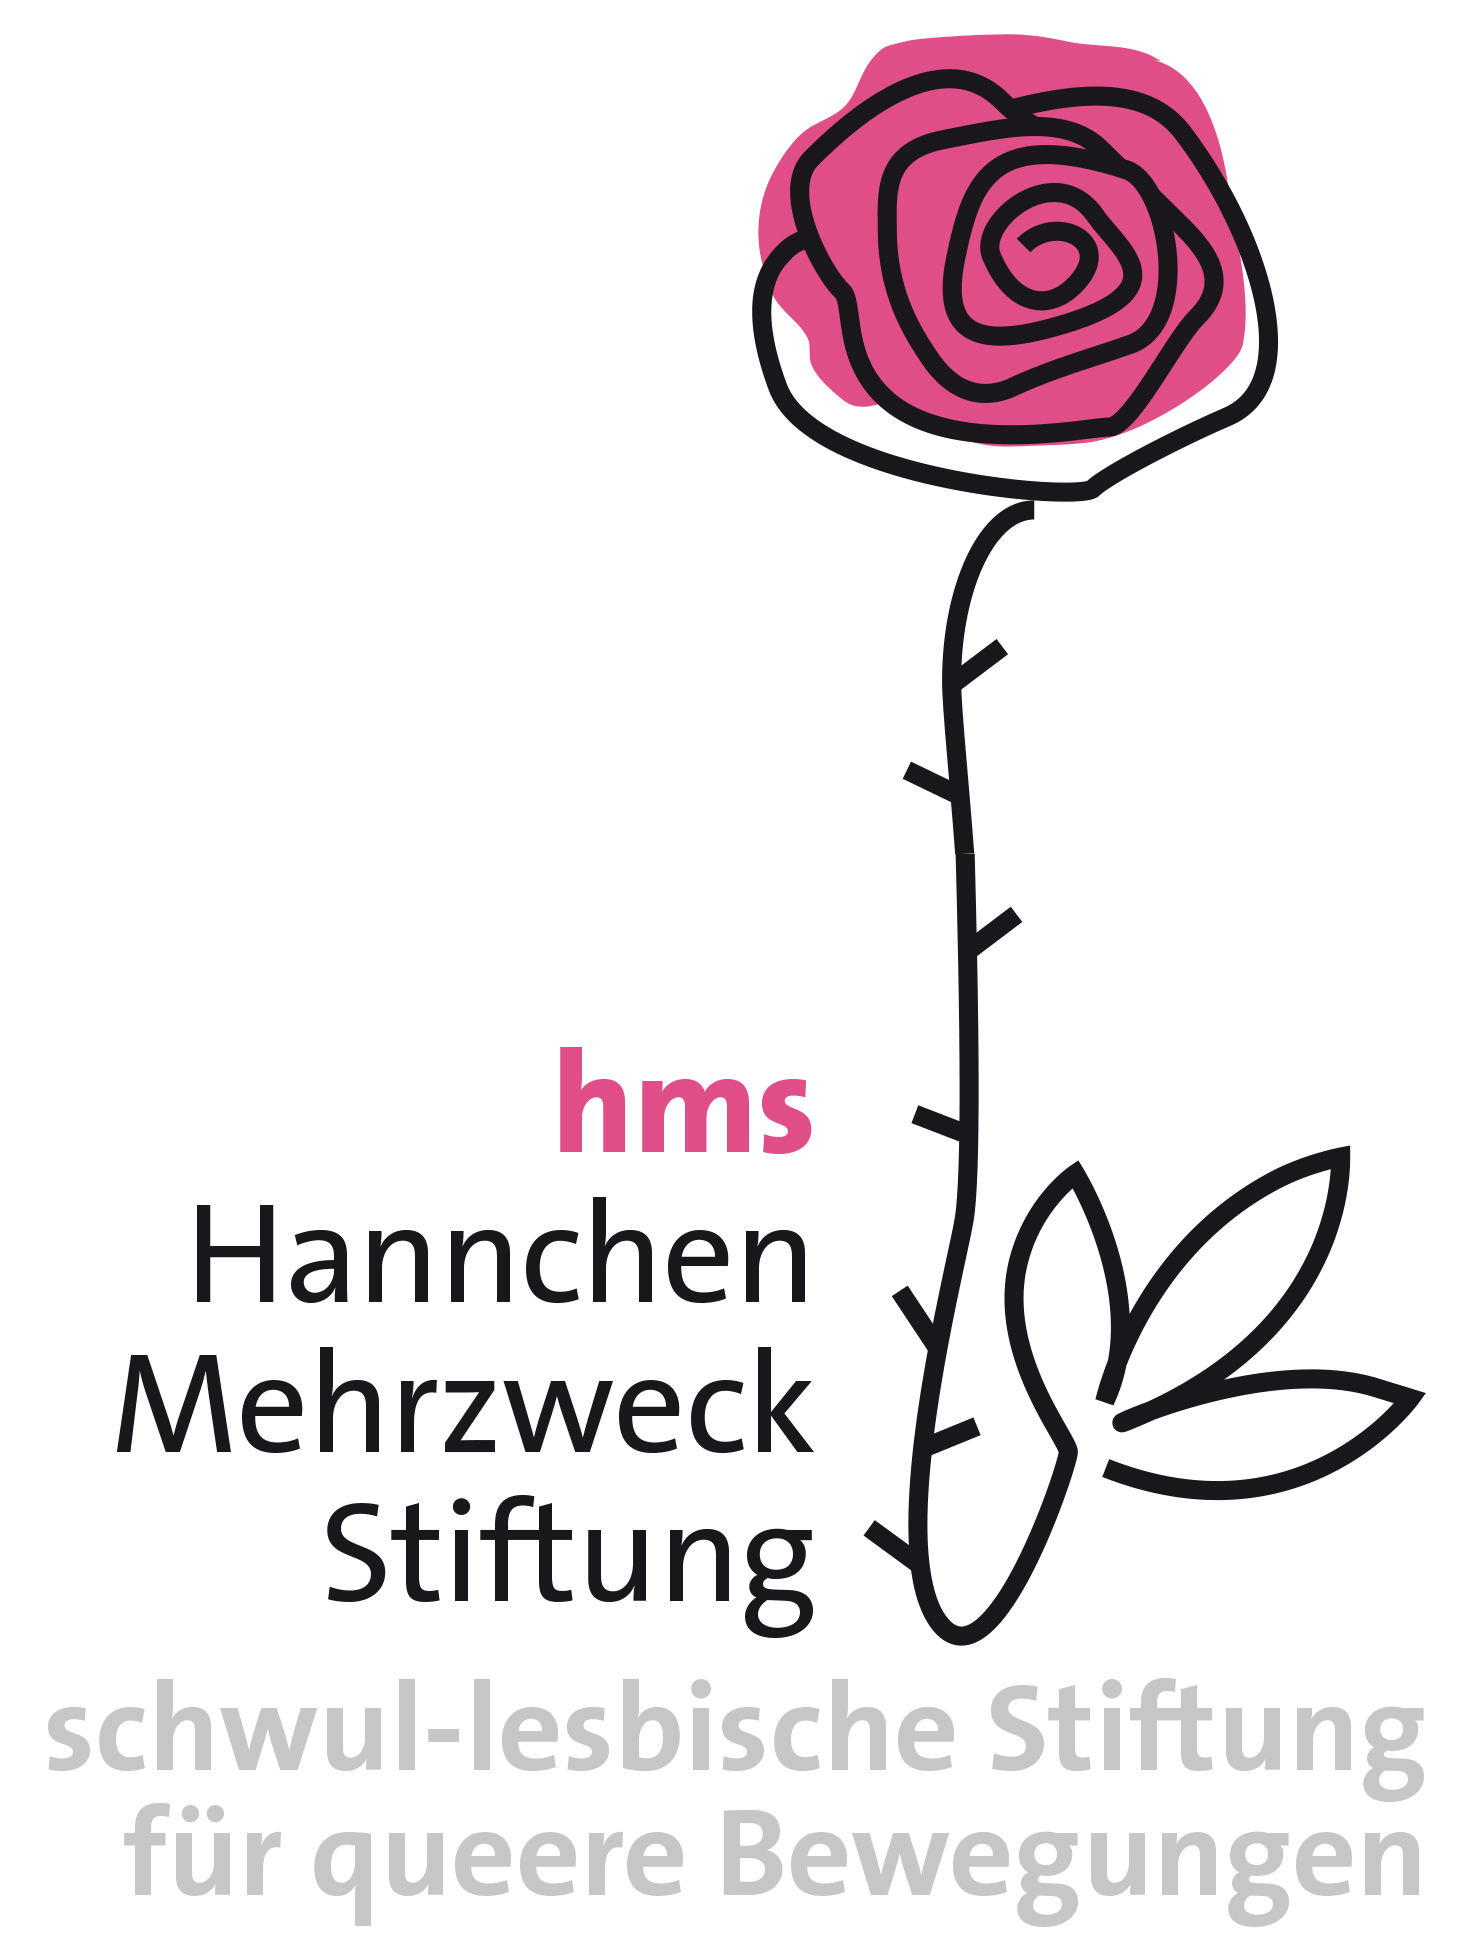 hms Hannchen Mehrzweck Stiftung - schwul-lesbische Stiftung für queere Bewegungen